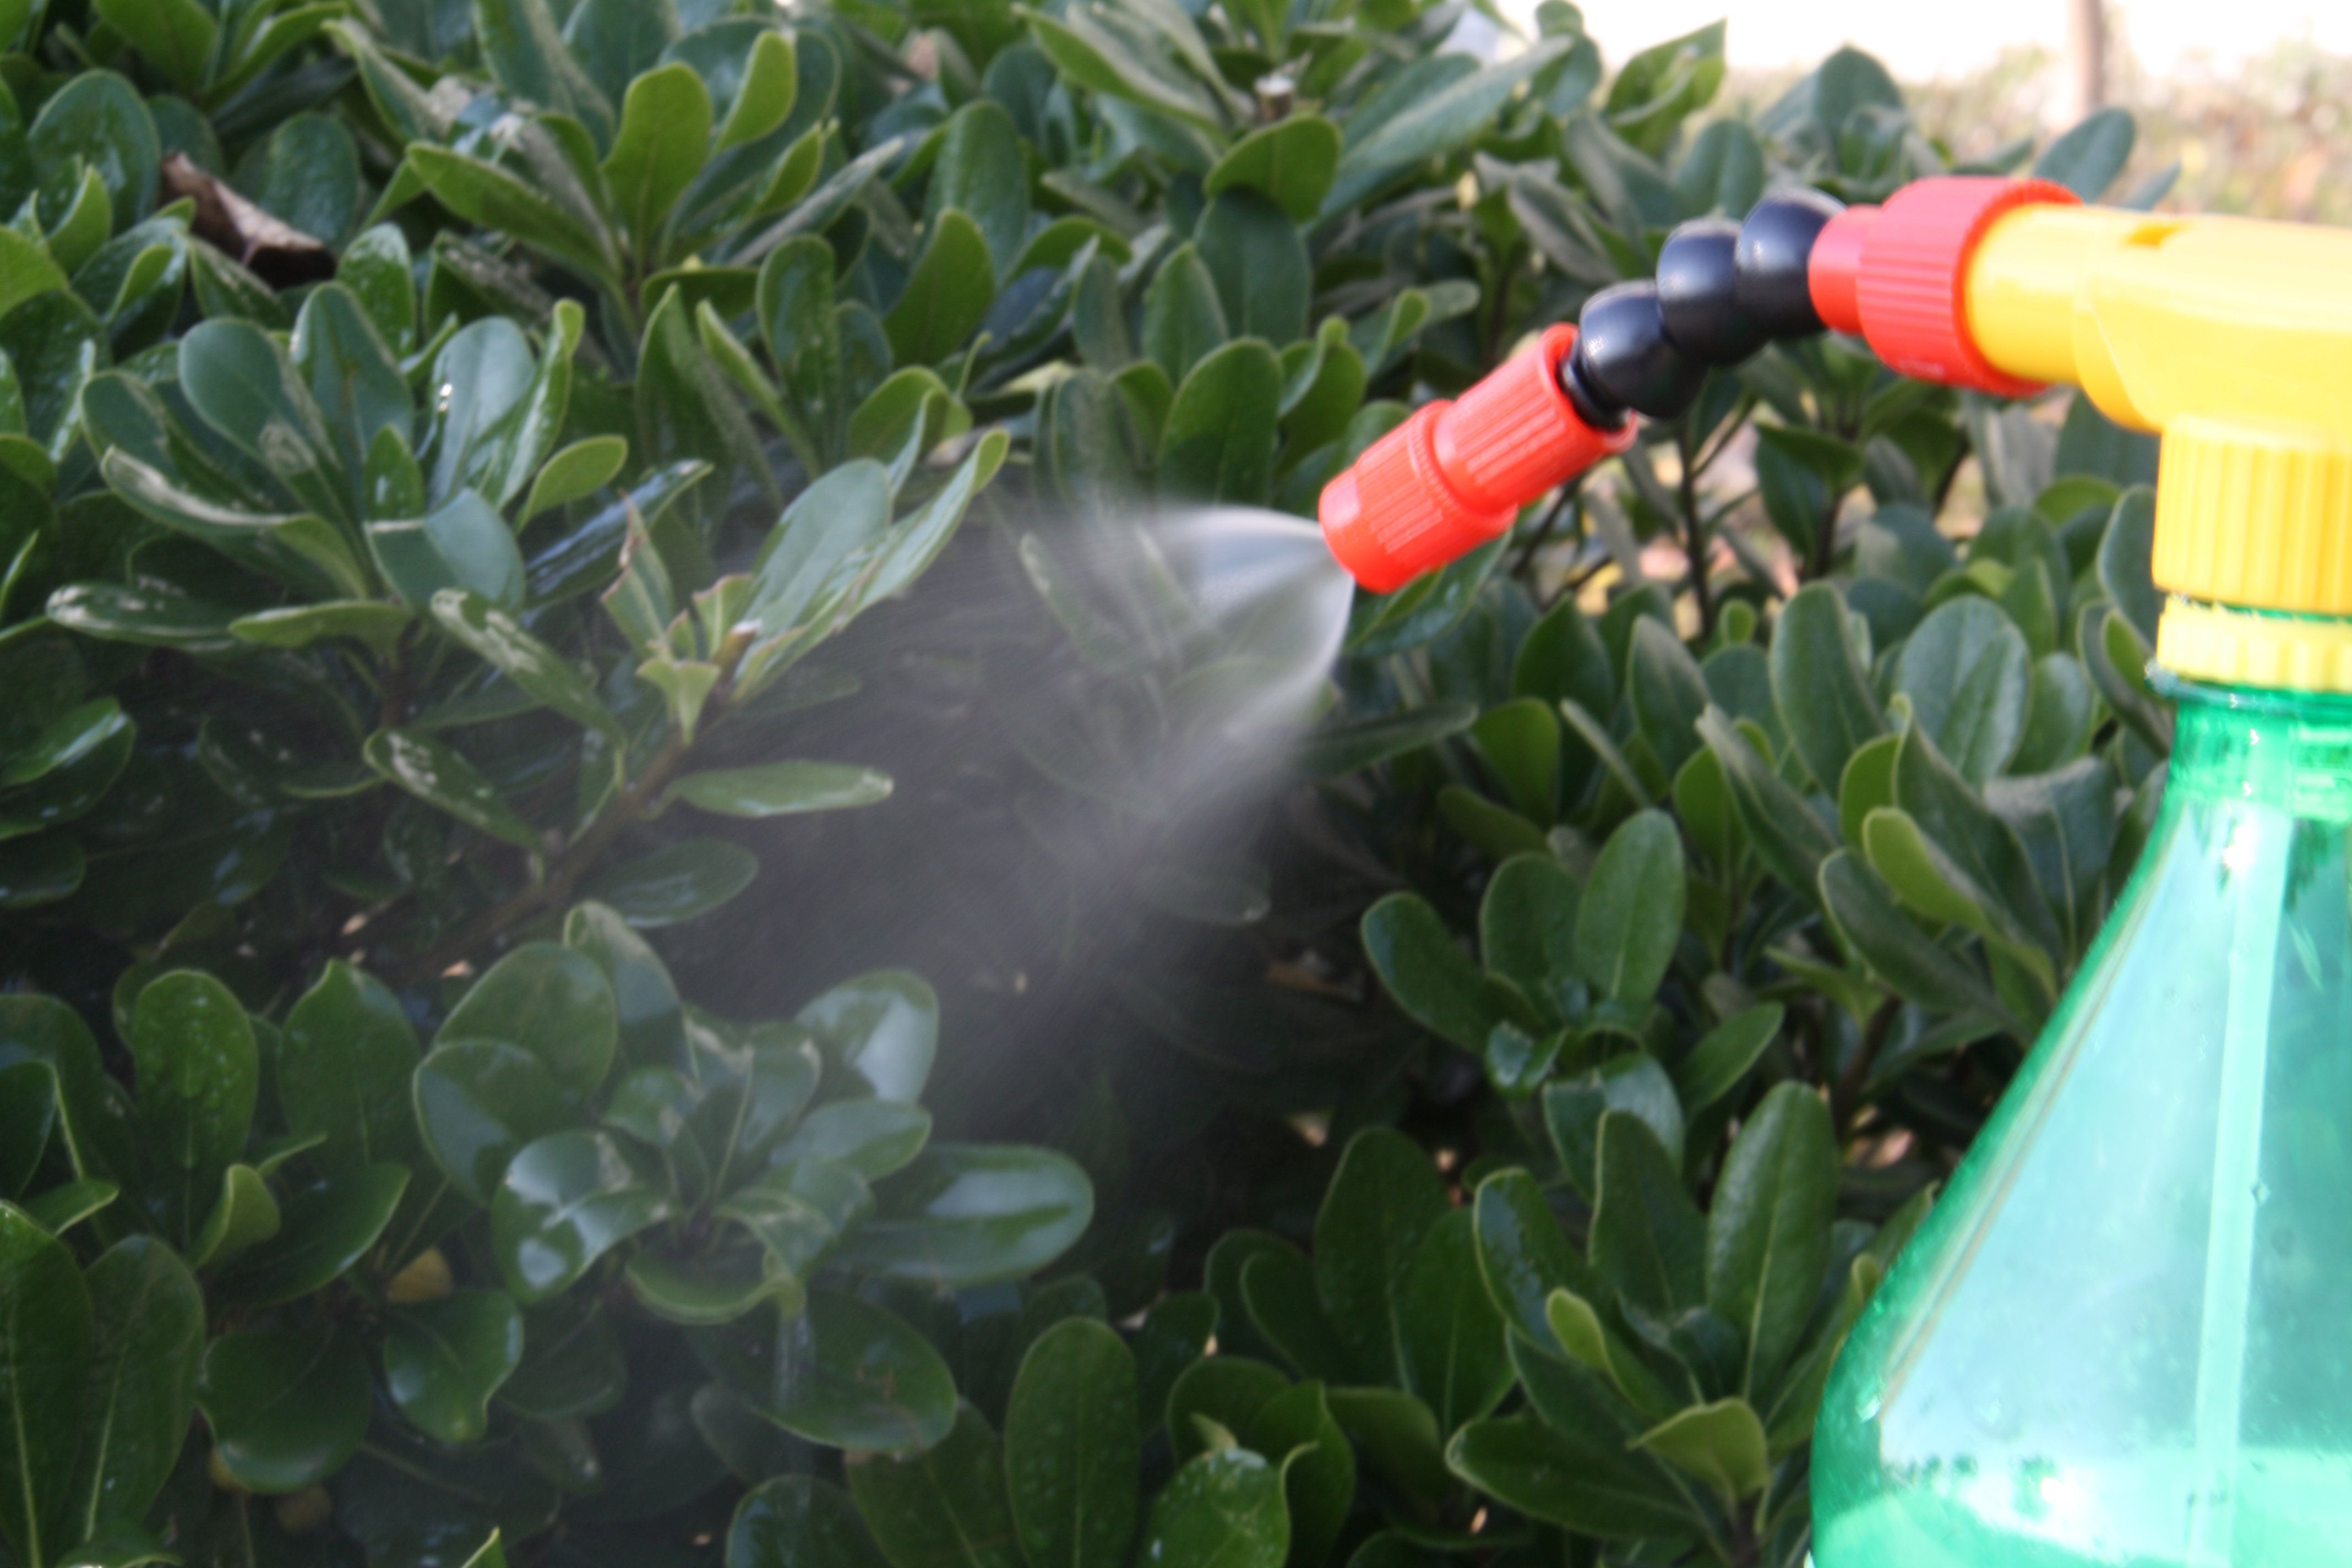 COLA sprayer head portable water gun